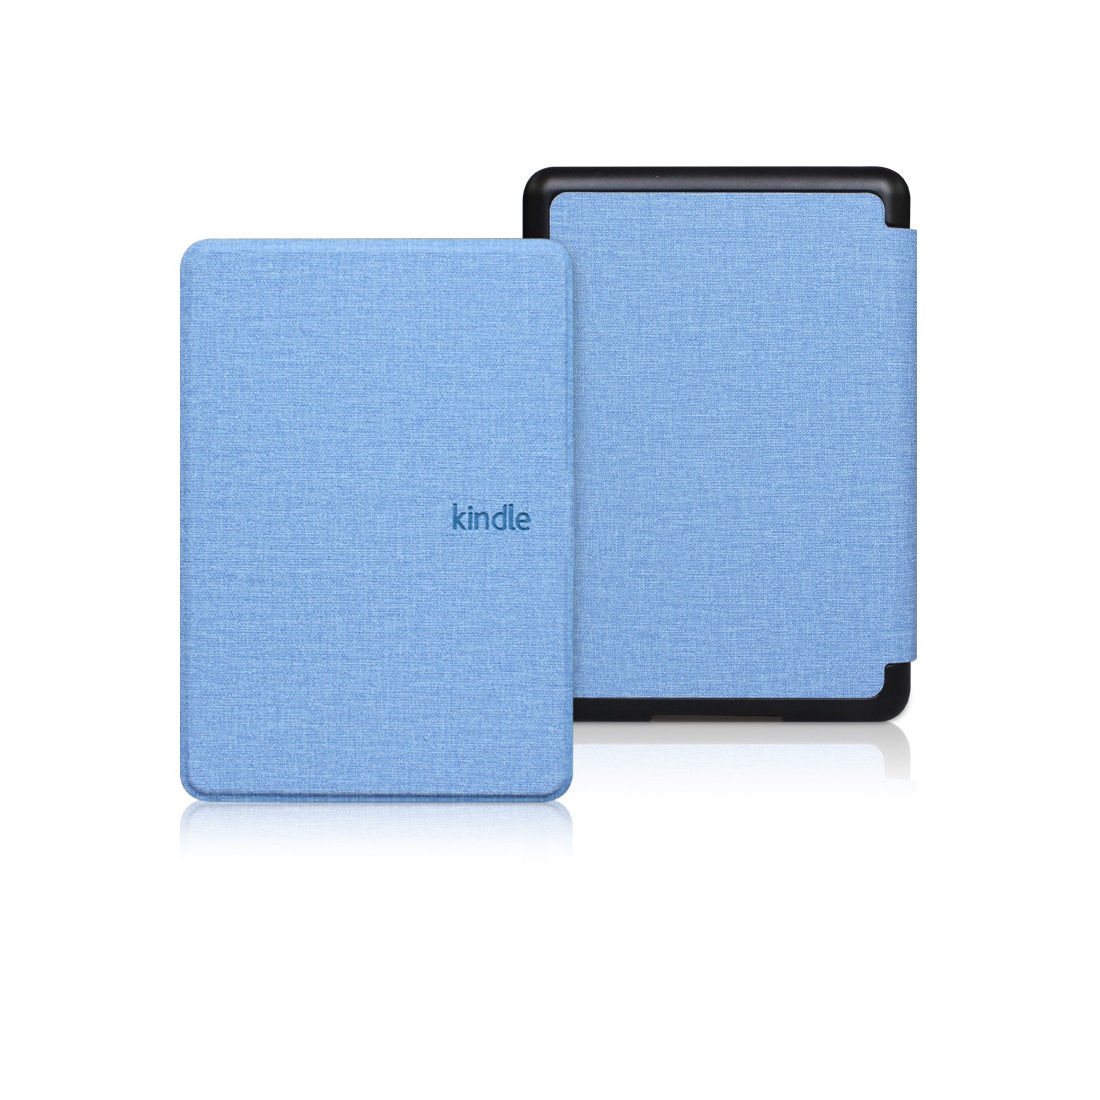 Bao da Cover cho Kindle Paperwhite 5 - Mẫu vân vải, ốp sau PVC - Smartcover tự động tắt mở